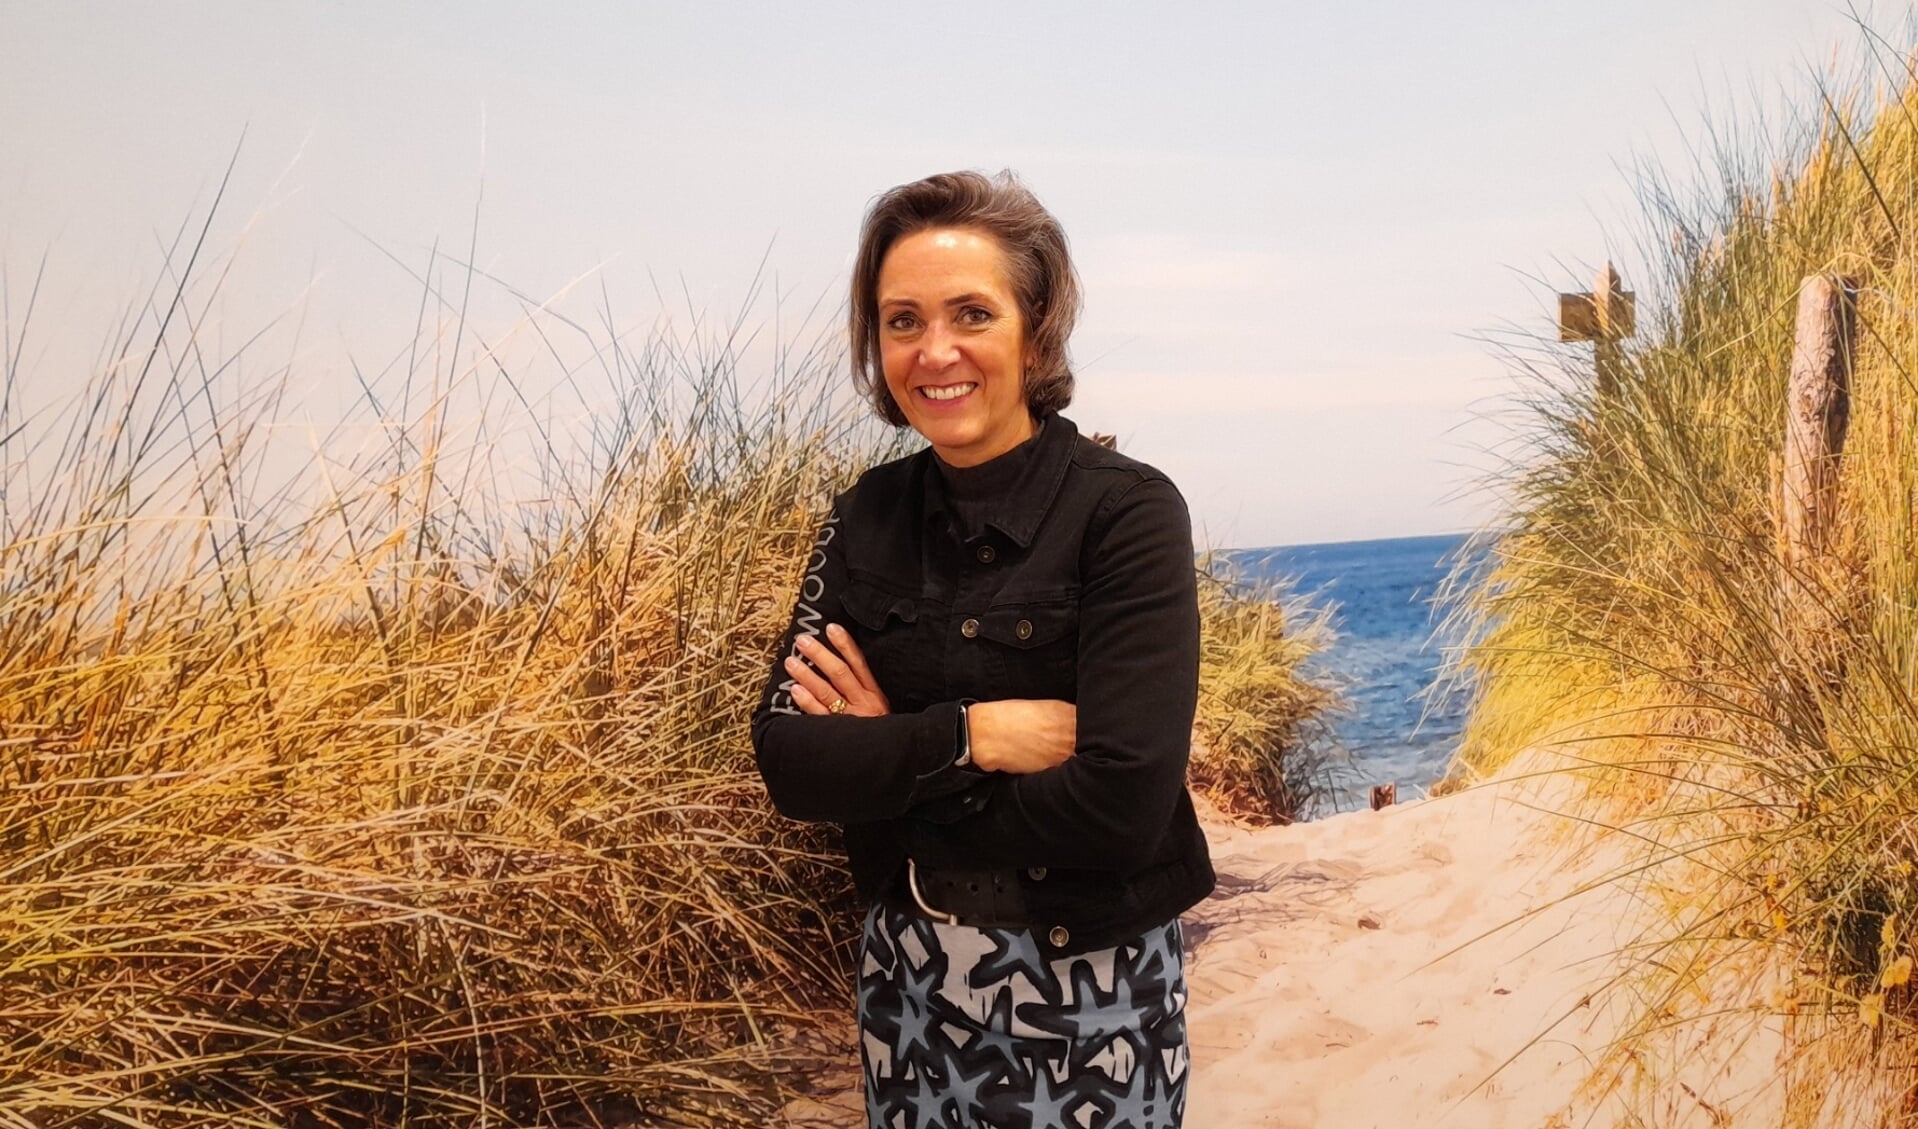 Kinderfysiotherapeute Ilona Diepeveen vertrekt naar het Zeeuwse land. 